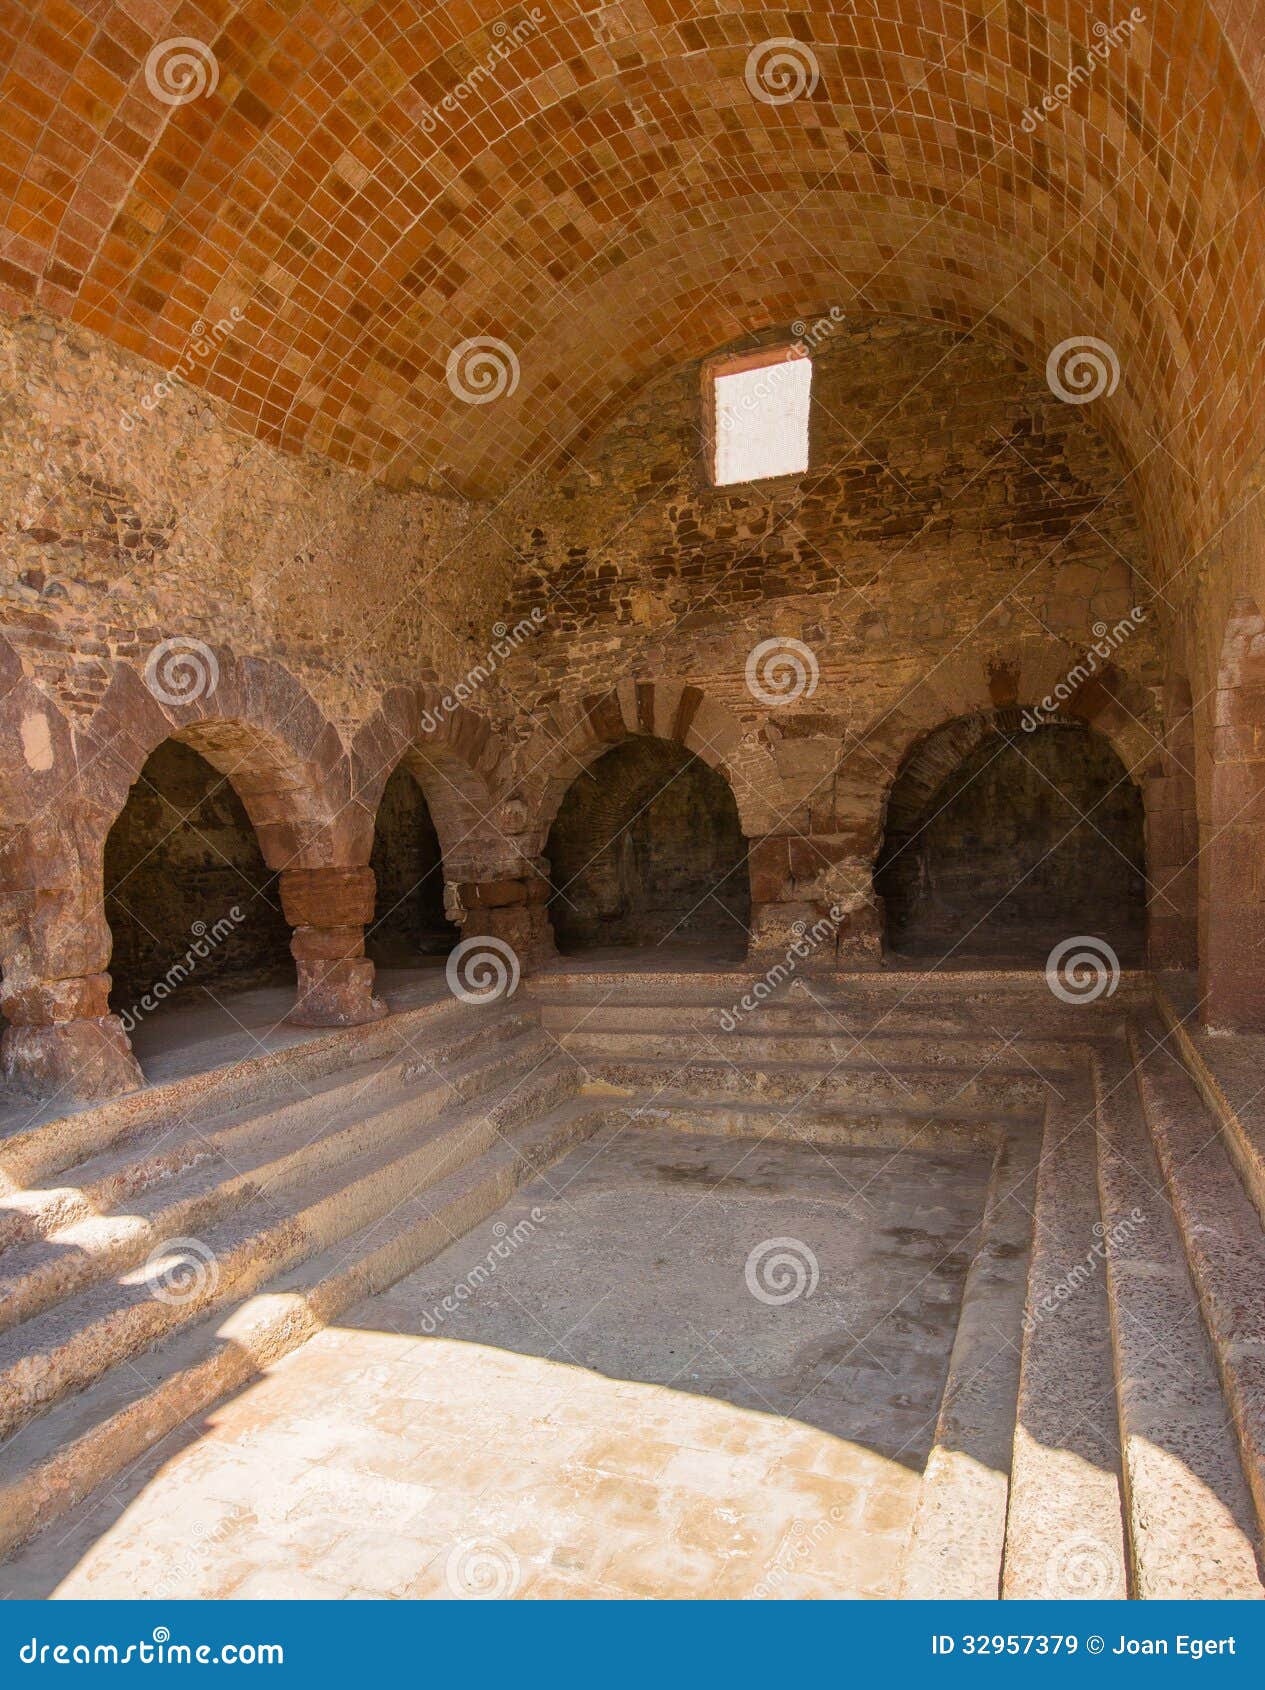 public baths of the ancient romans